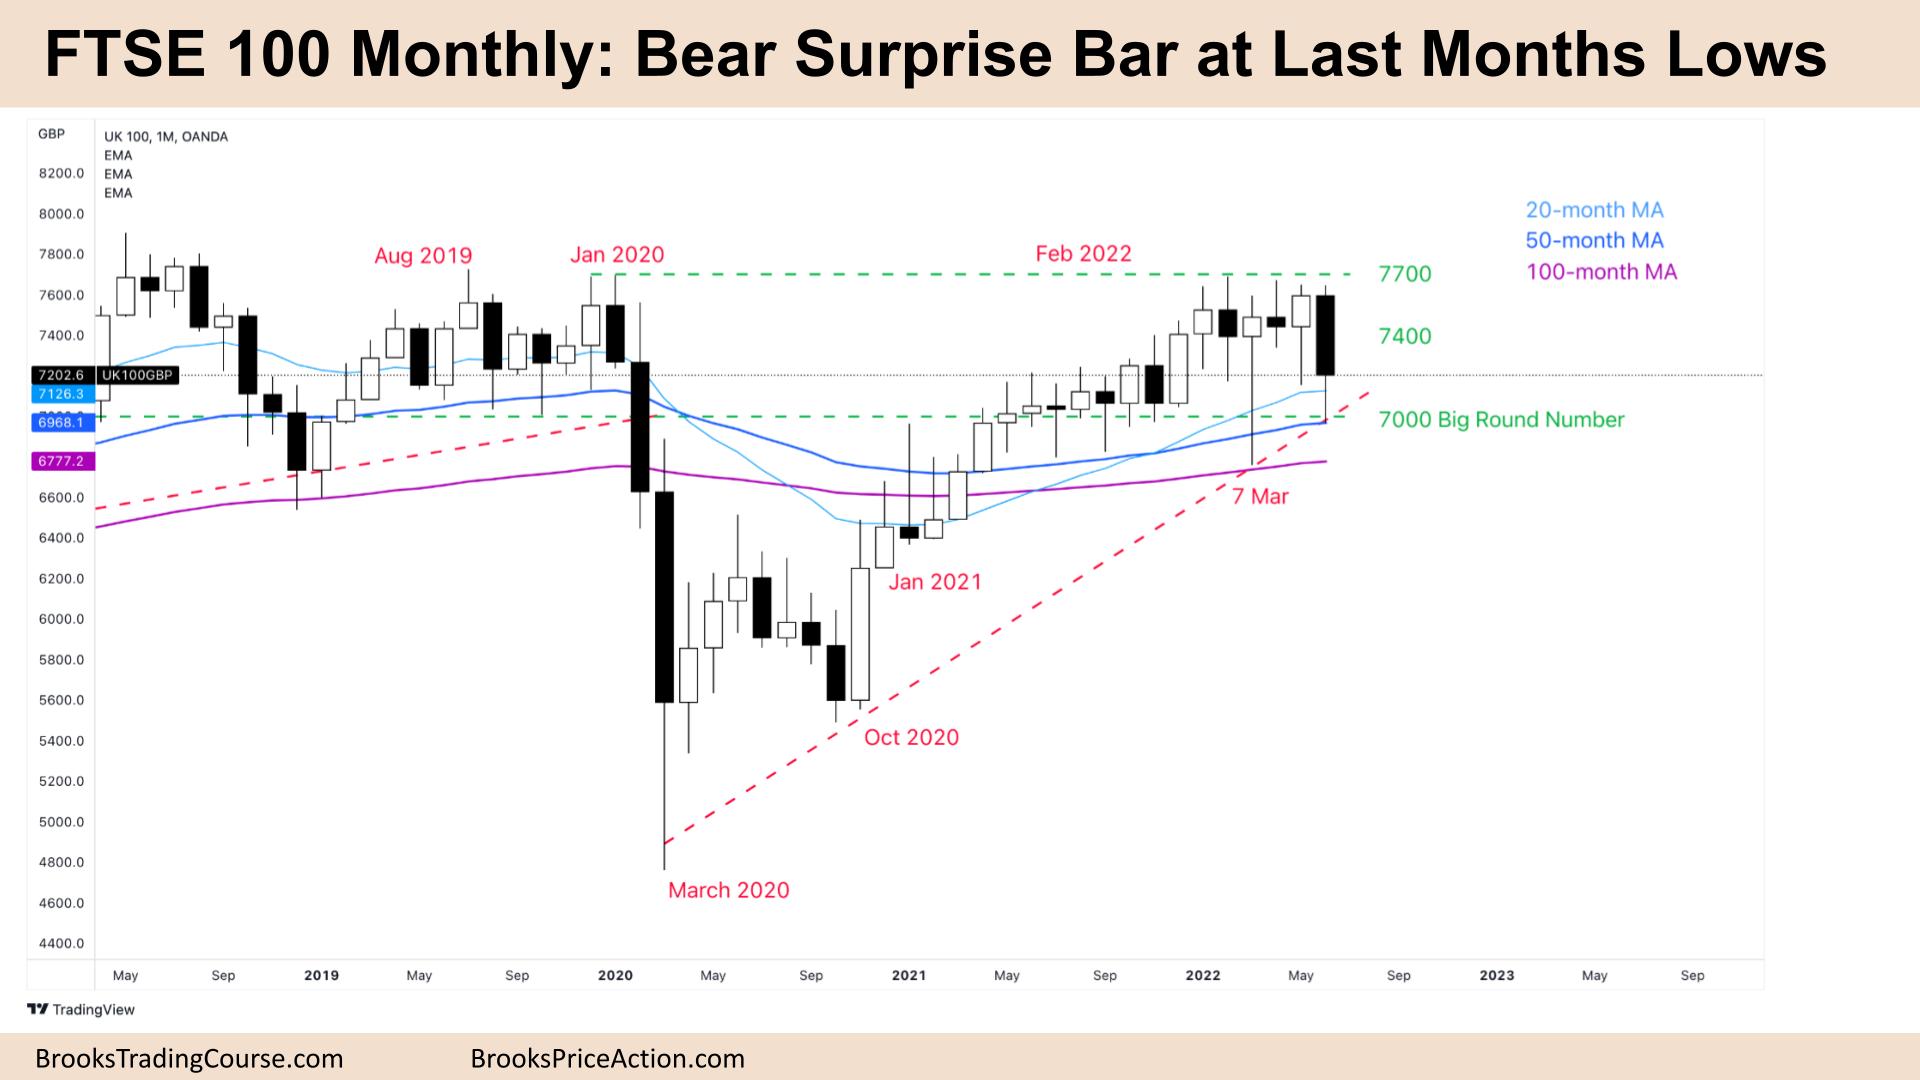 FTSE 100 Bear Surprise Bar at Last Months Lows